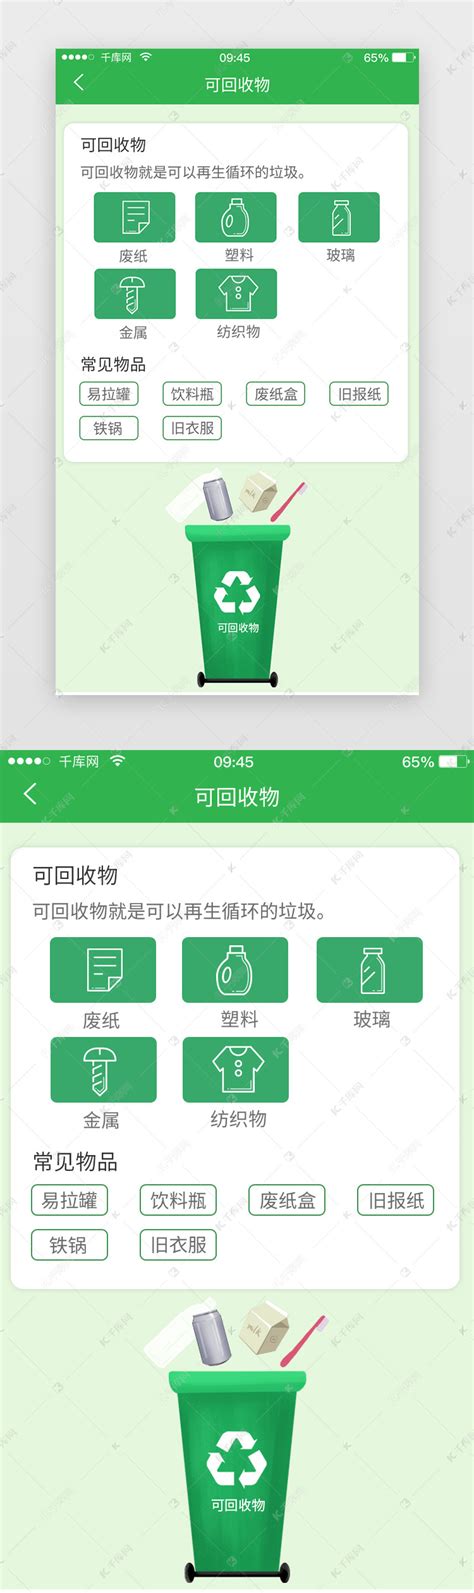 绿色简约垃圾分类app主界面ui界面设计素材-千库网